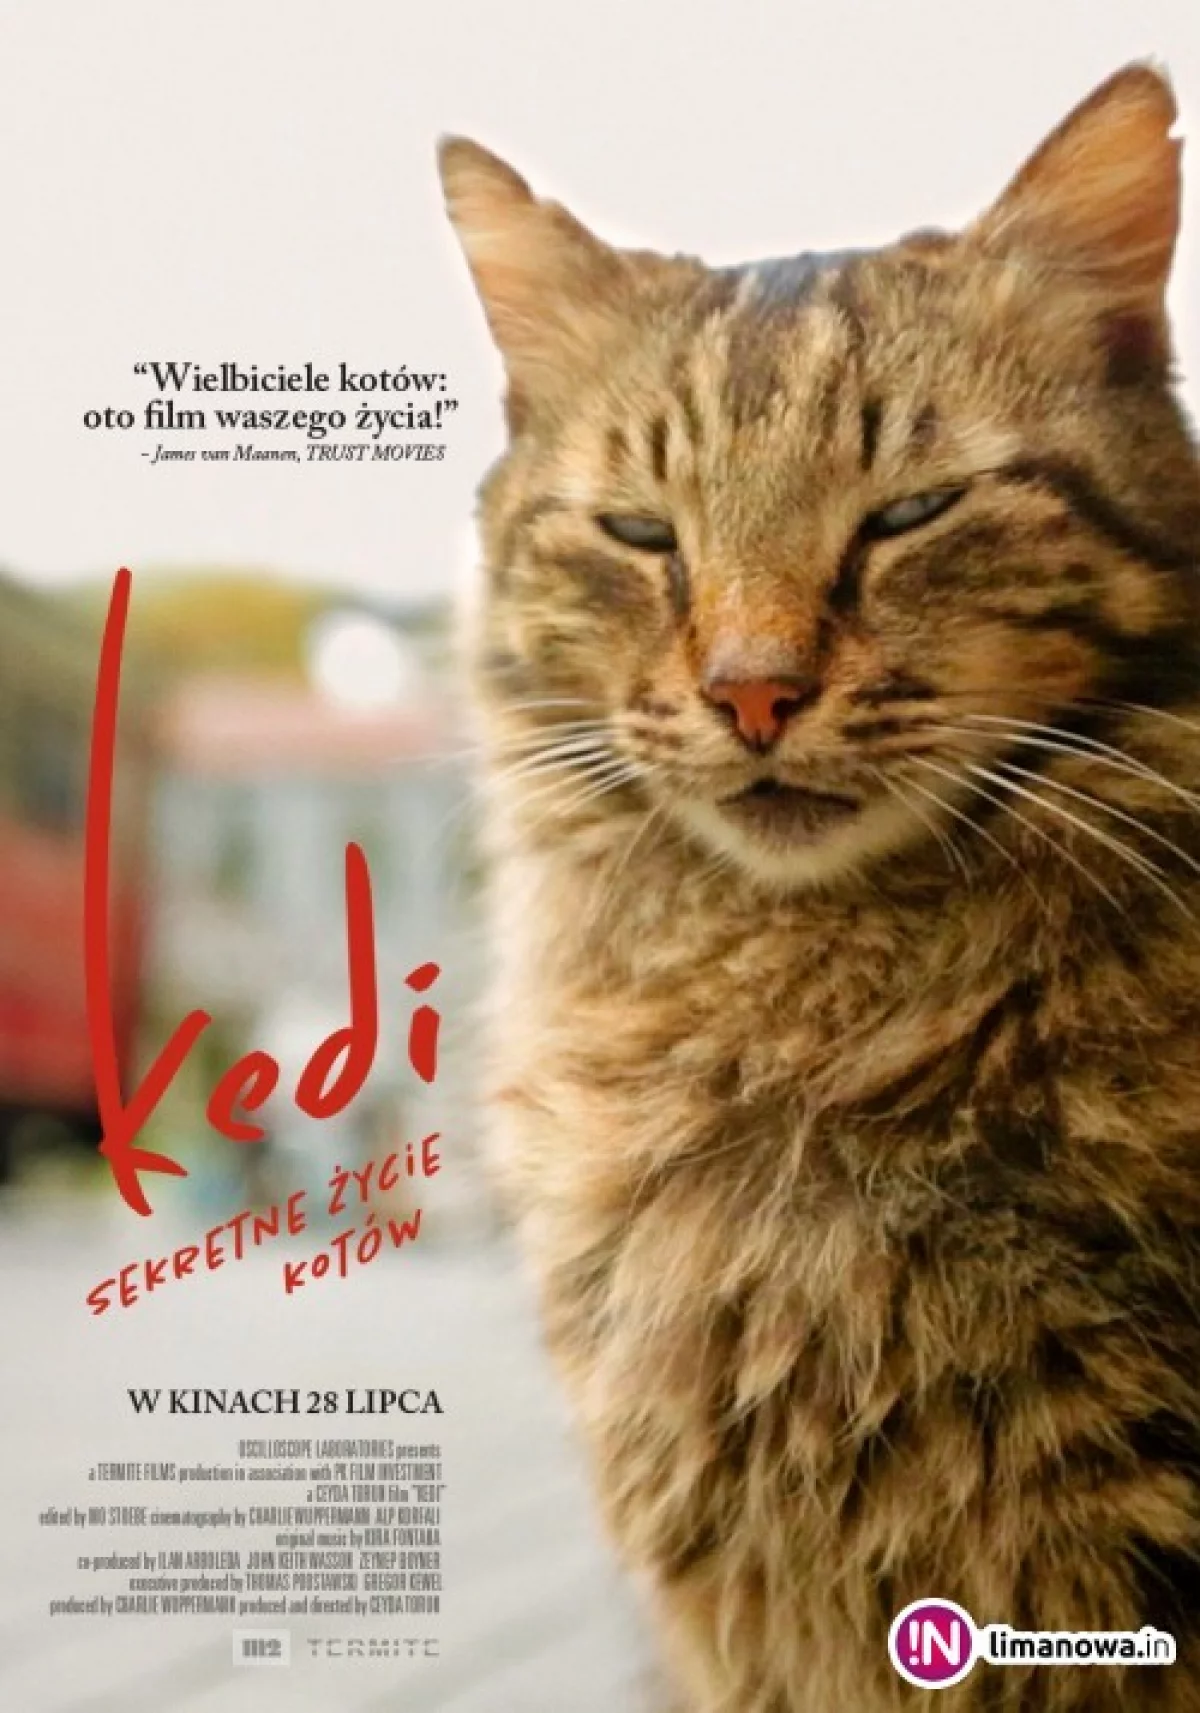 Kino Konesera – seans „Kedi – sekretne życie kotów” już 15 września!